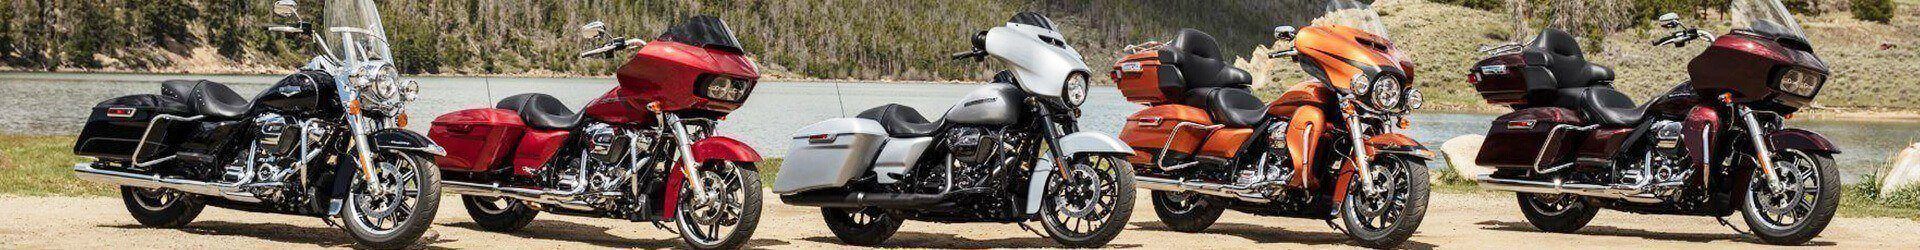 Get Your Trade-In Value Longhorn Harley-Davidson®.